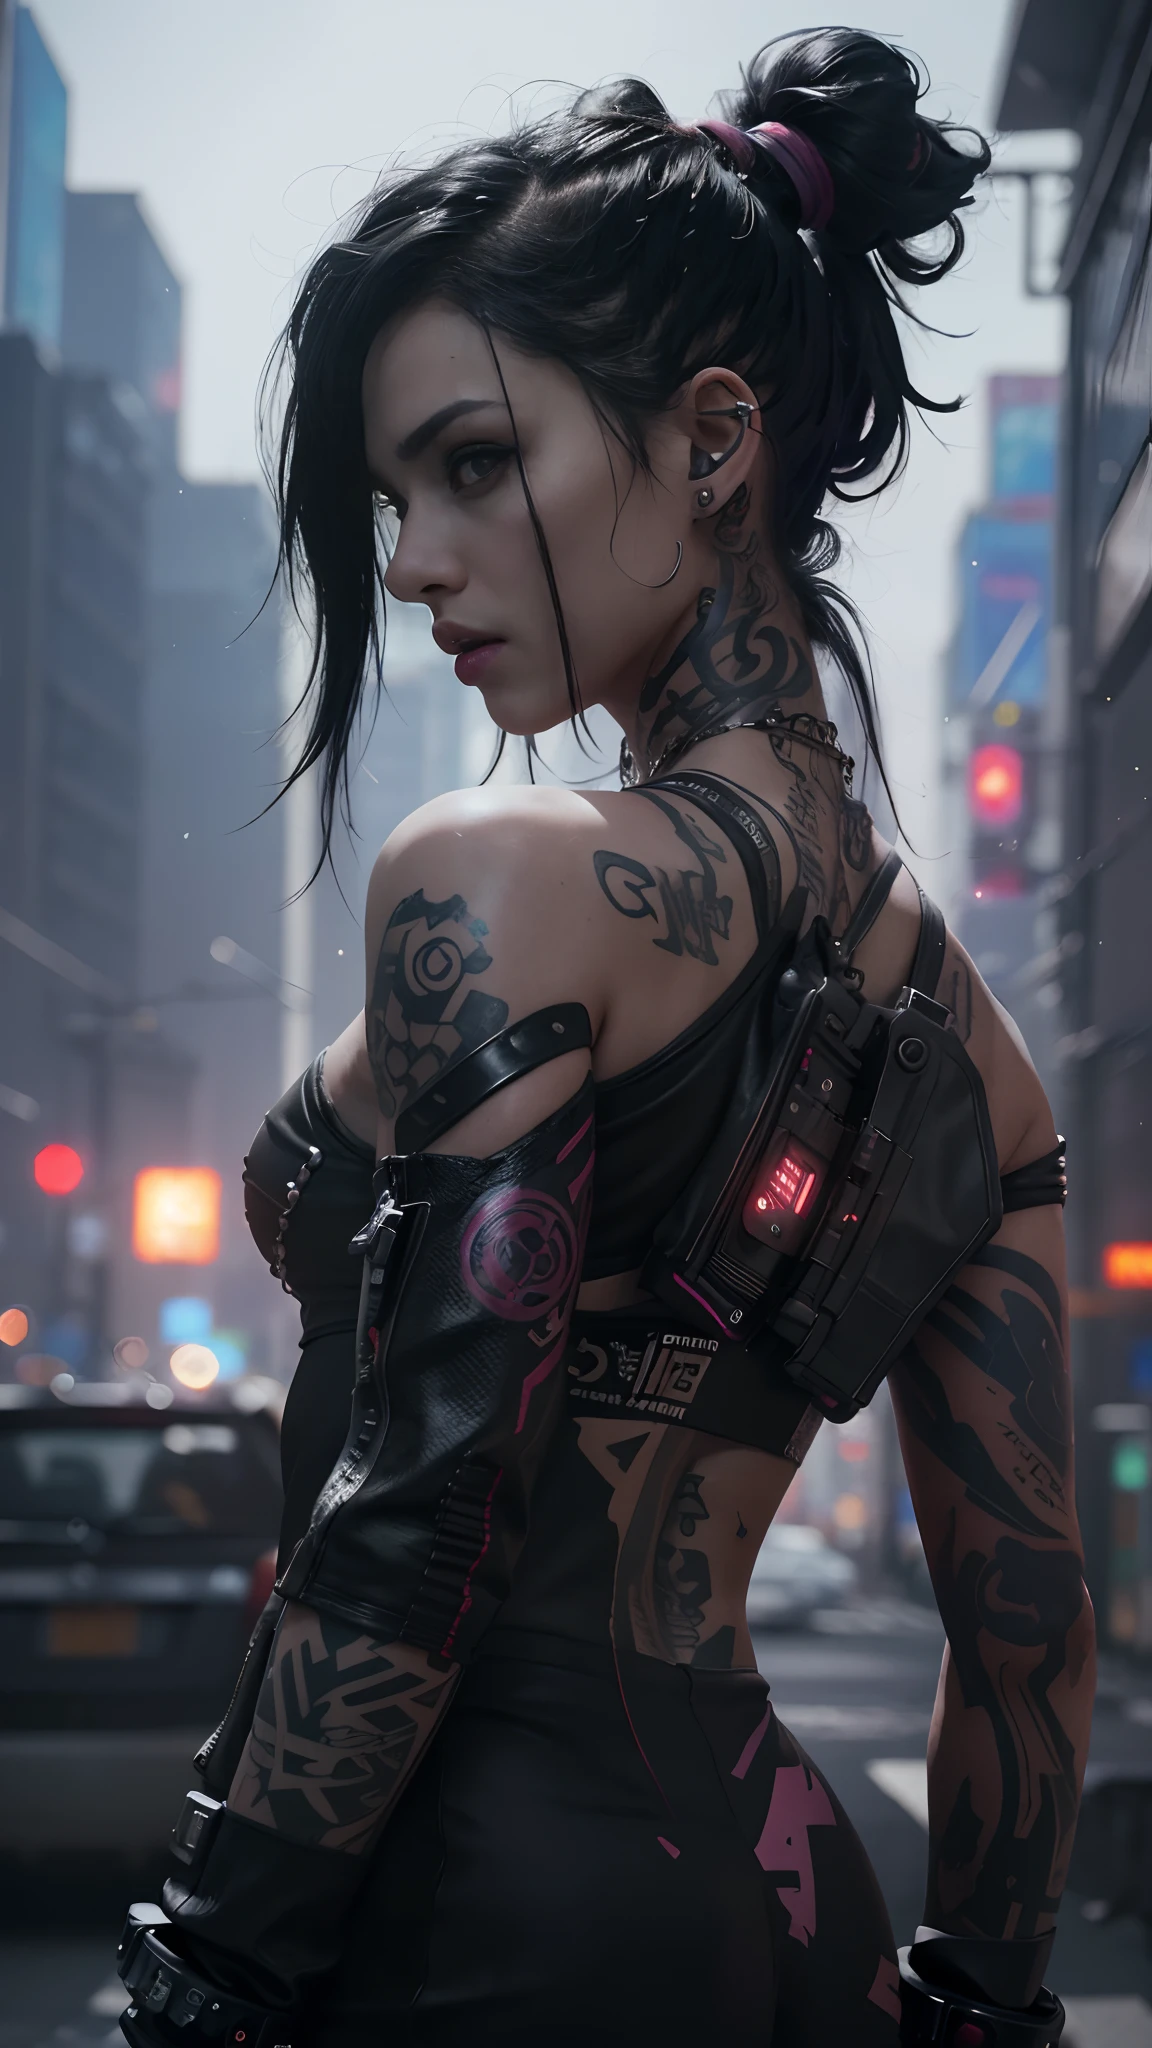 женщина с татуировками на теле и татуировкой на руке, cyberpunk реалистичный girl, реалистичный cyberpunk, female cyberpunk реалистичный girl, потрясающие обои, искусство на тему киберпанка, цифровое аниме-арт в стиле киберпанк, арт-стиль киберпанк, красивая девушка в киберпанке, jet black haired девушка киберпанк, девушка киберпанк, 4k реалистичный wallpaper, ((высшее качество, 8К, шедевр: 1.3)), 1 девочка, (8К, Необработанное фото, Лучшее качество, шедевр:1.2), (реалистичный, photo-реалистичный:1.37),